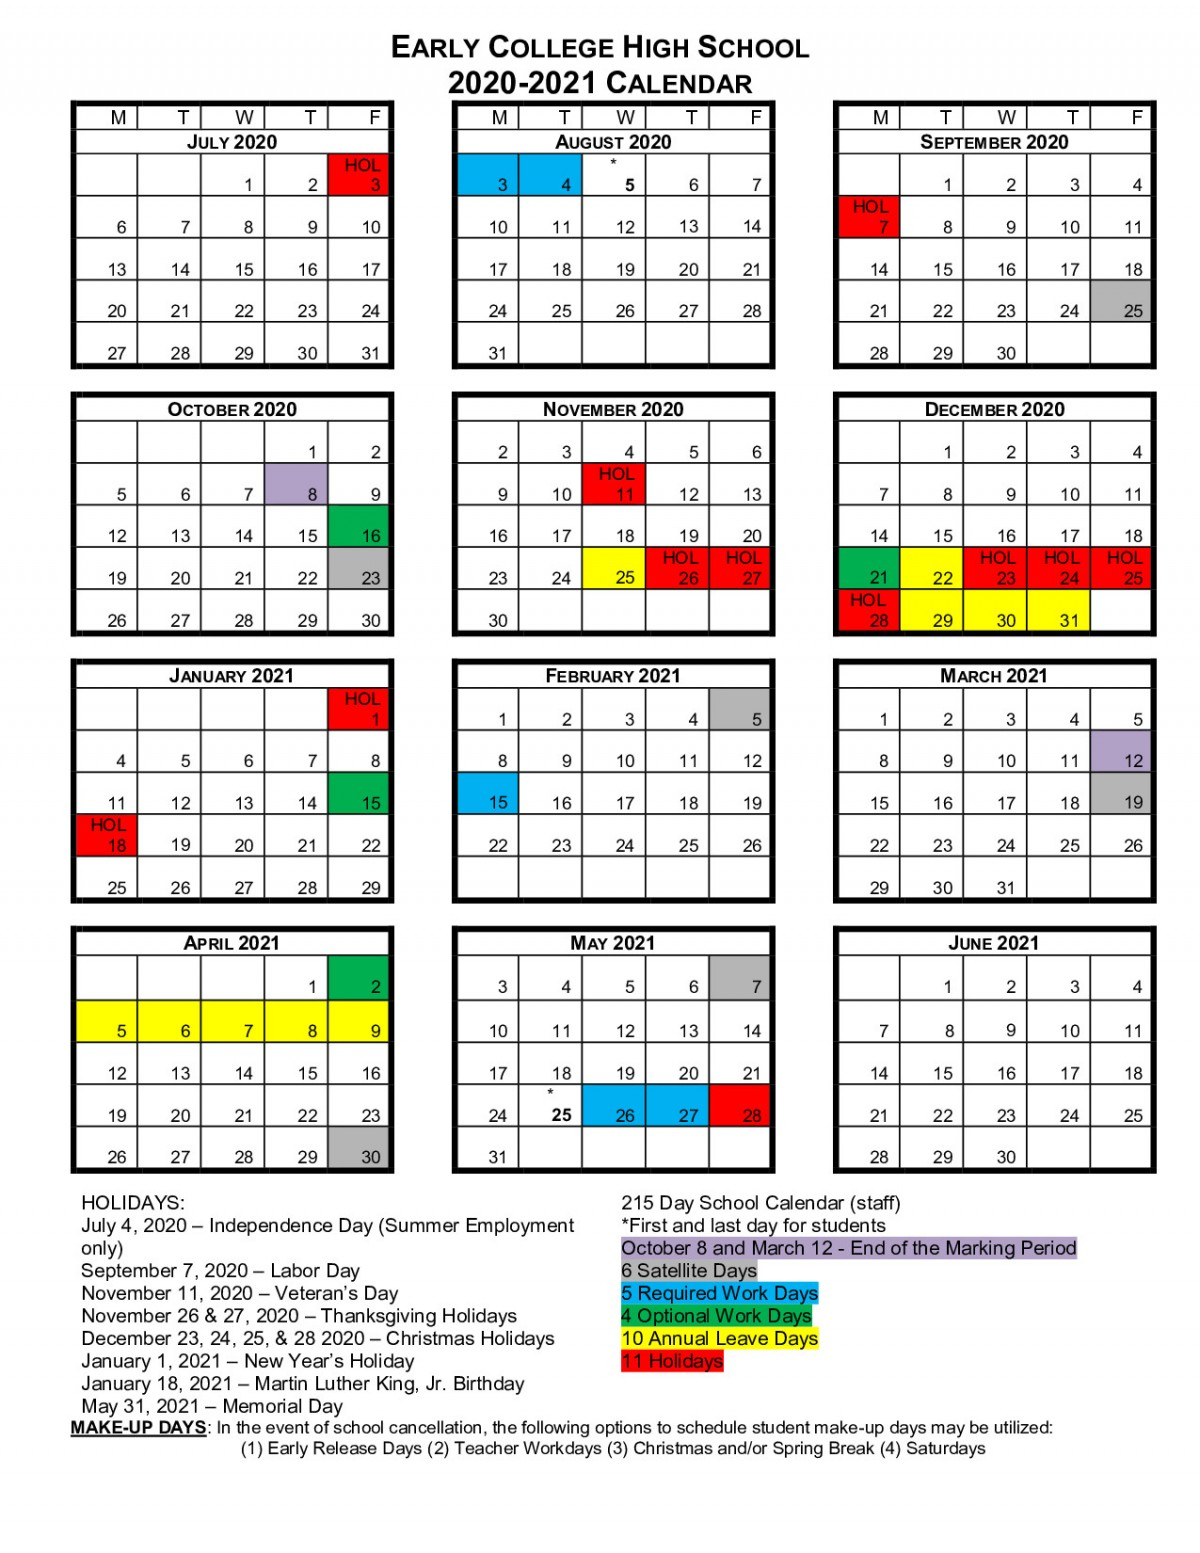 North Adams Community Schools Calendar 2021 2022